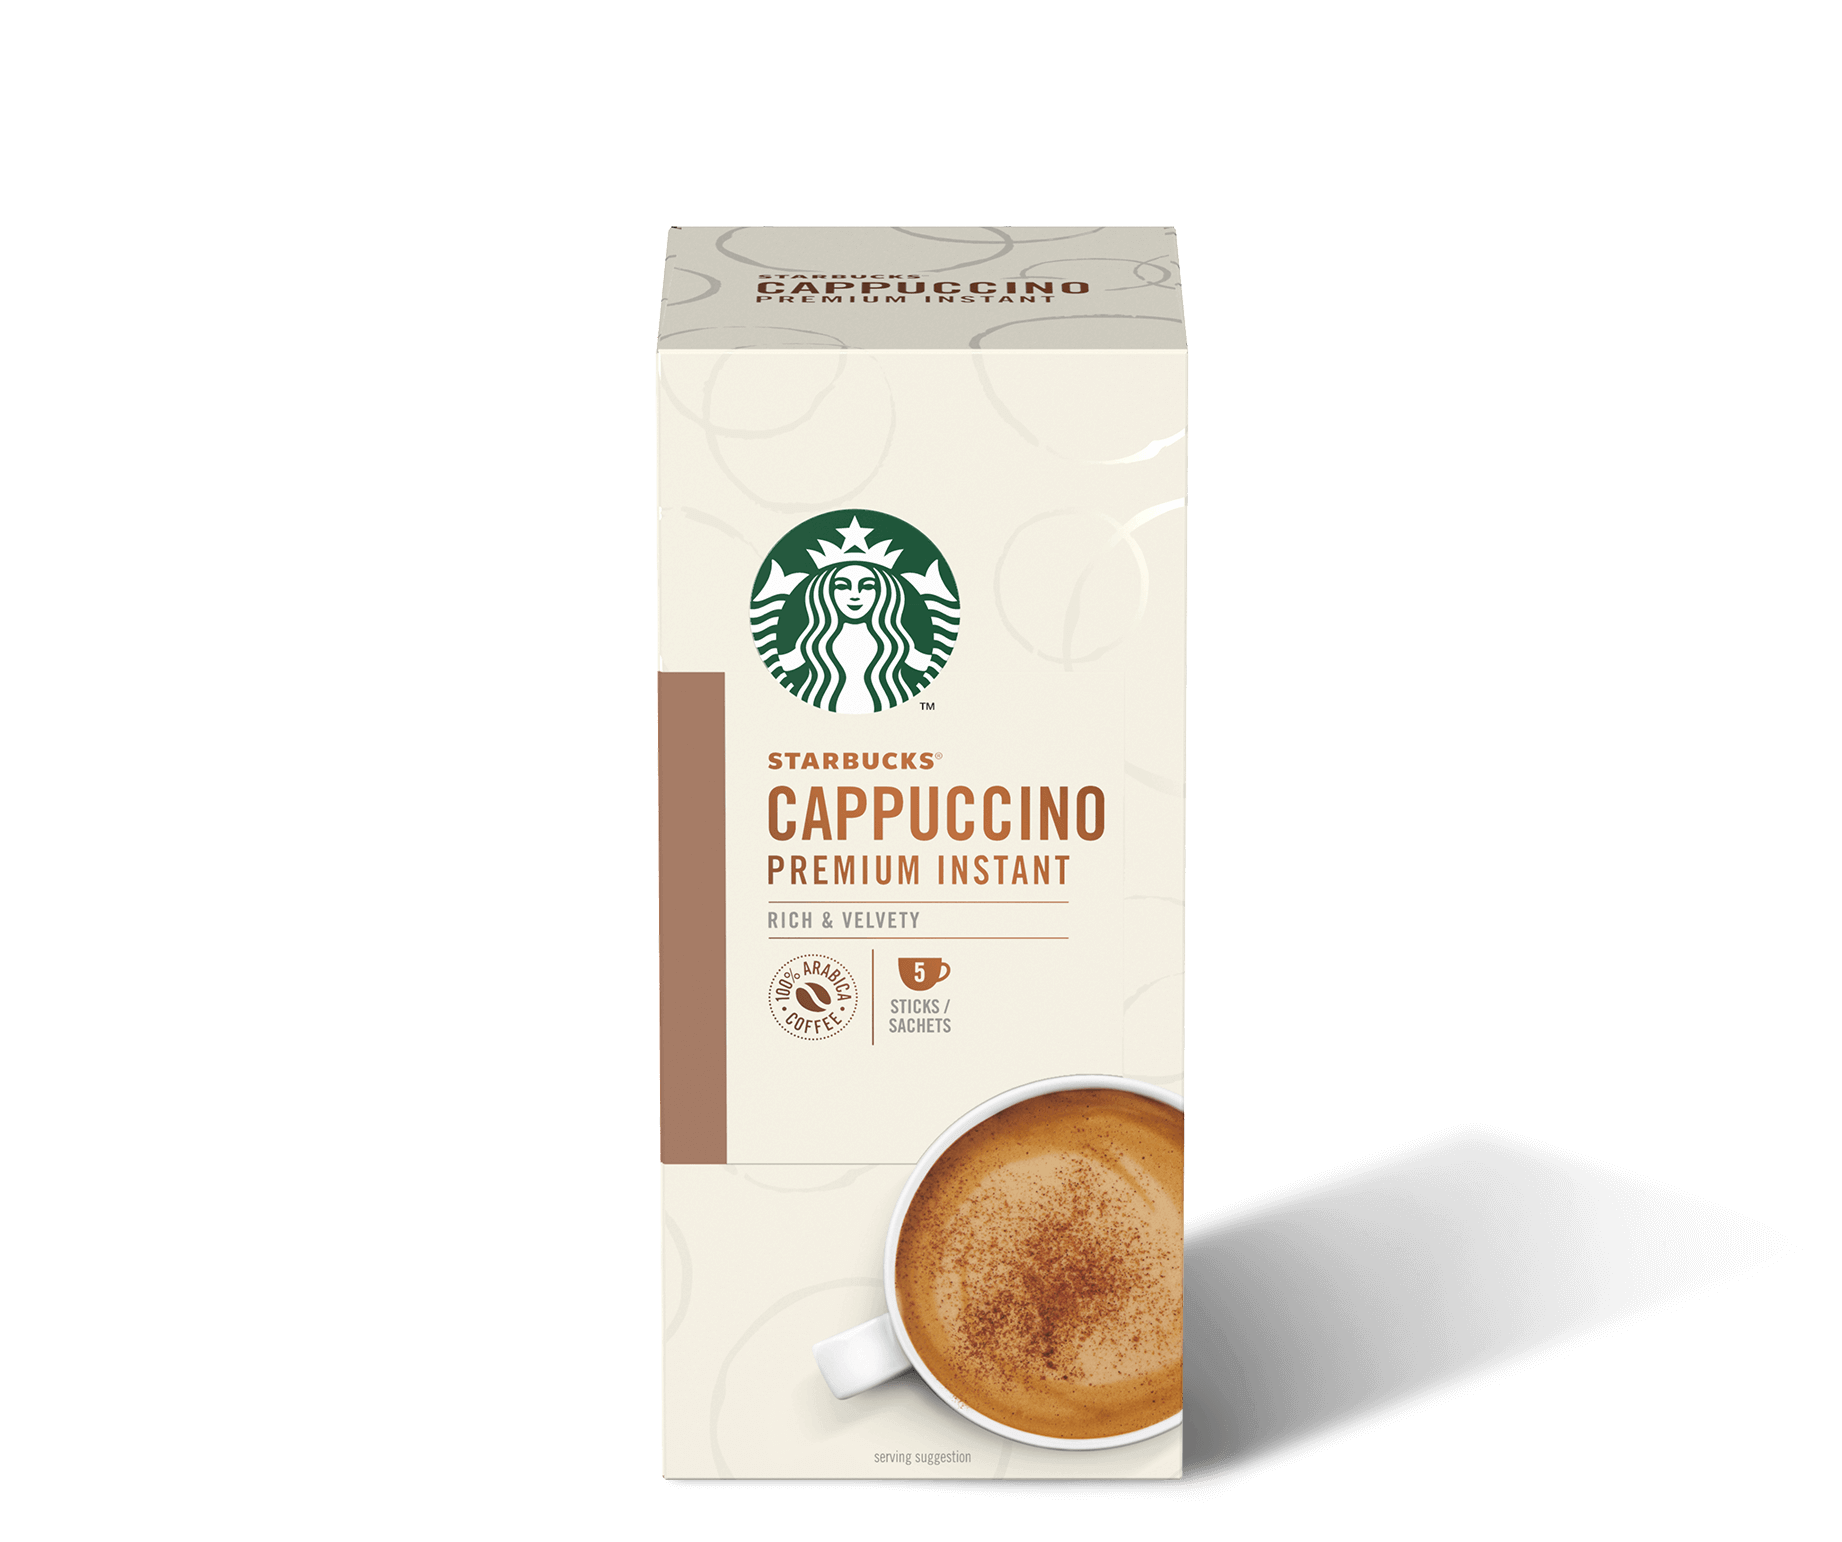 Starbucks Cappuccino premium instant